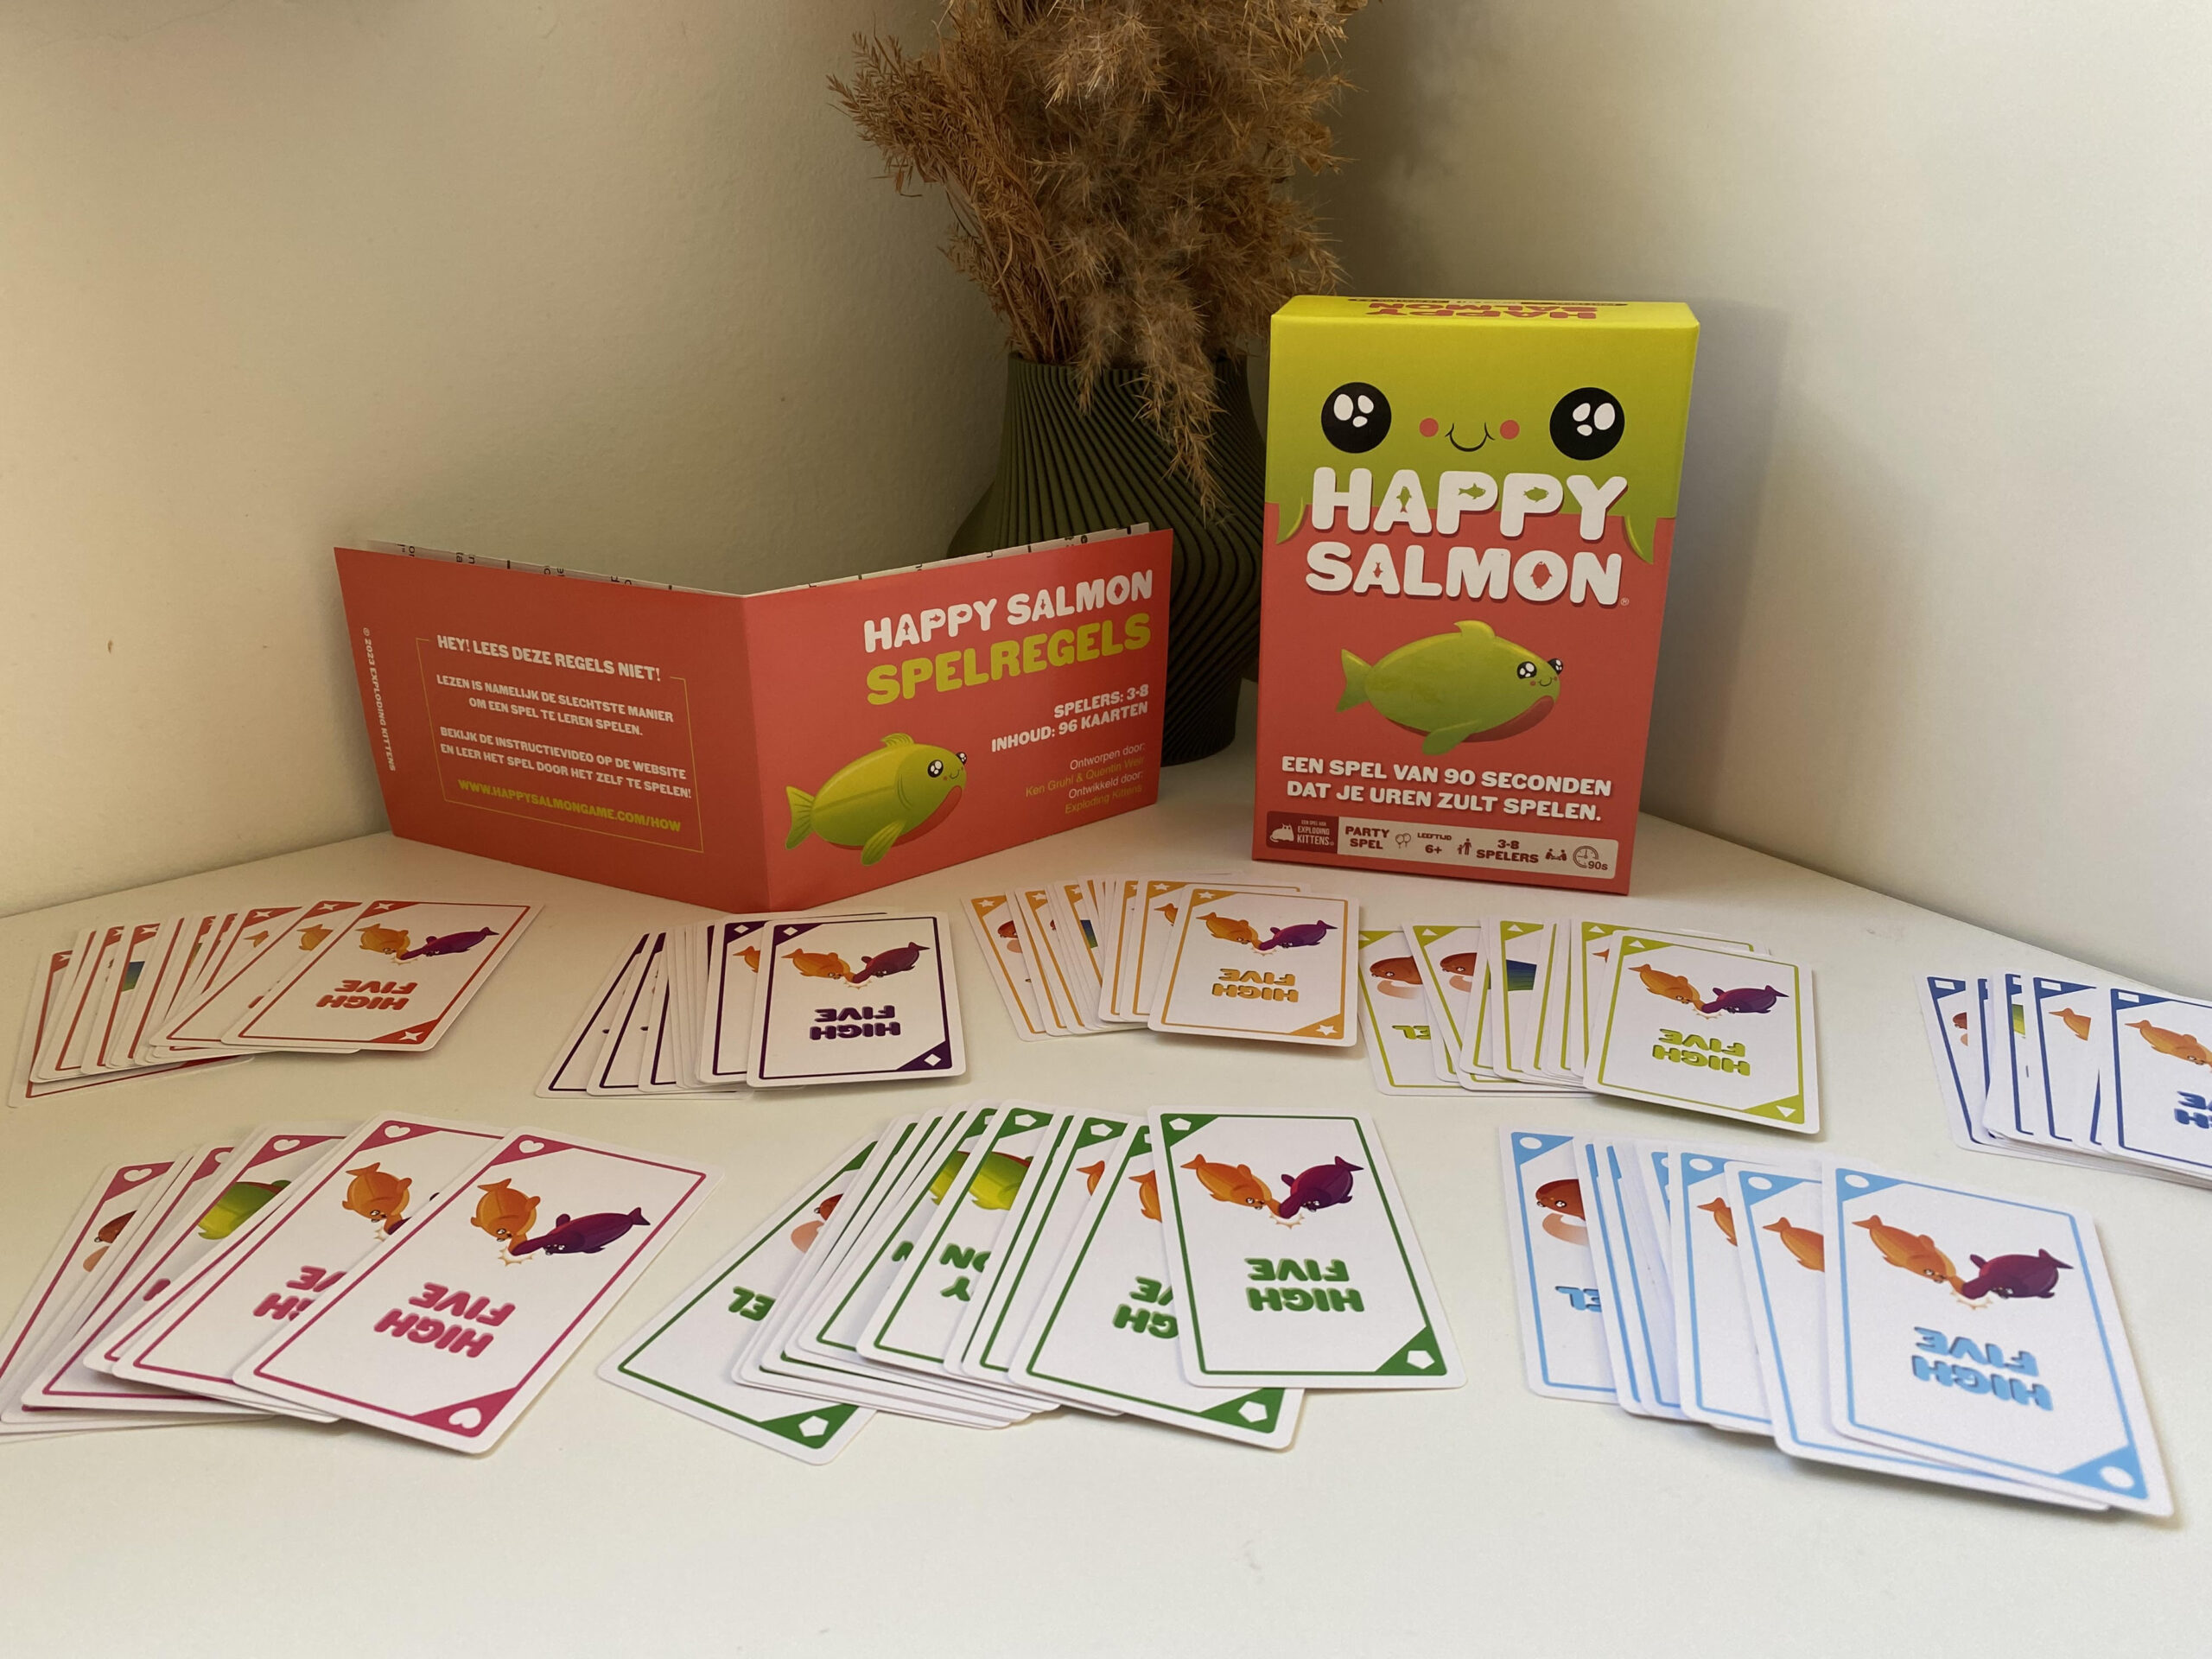 Happy Salmon: Het ultieme kaartspel voor vreugdevolle momenten